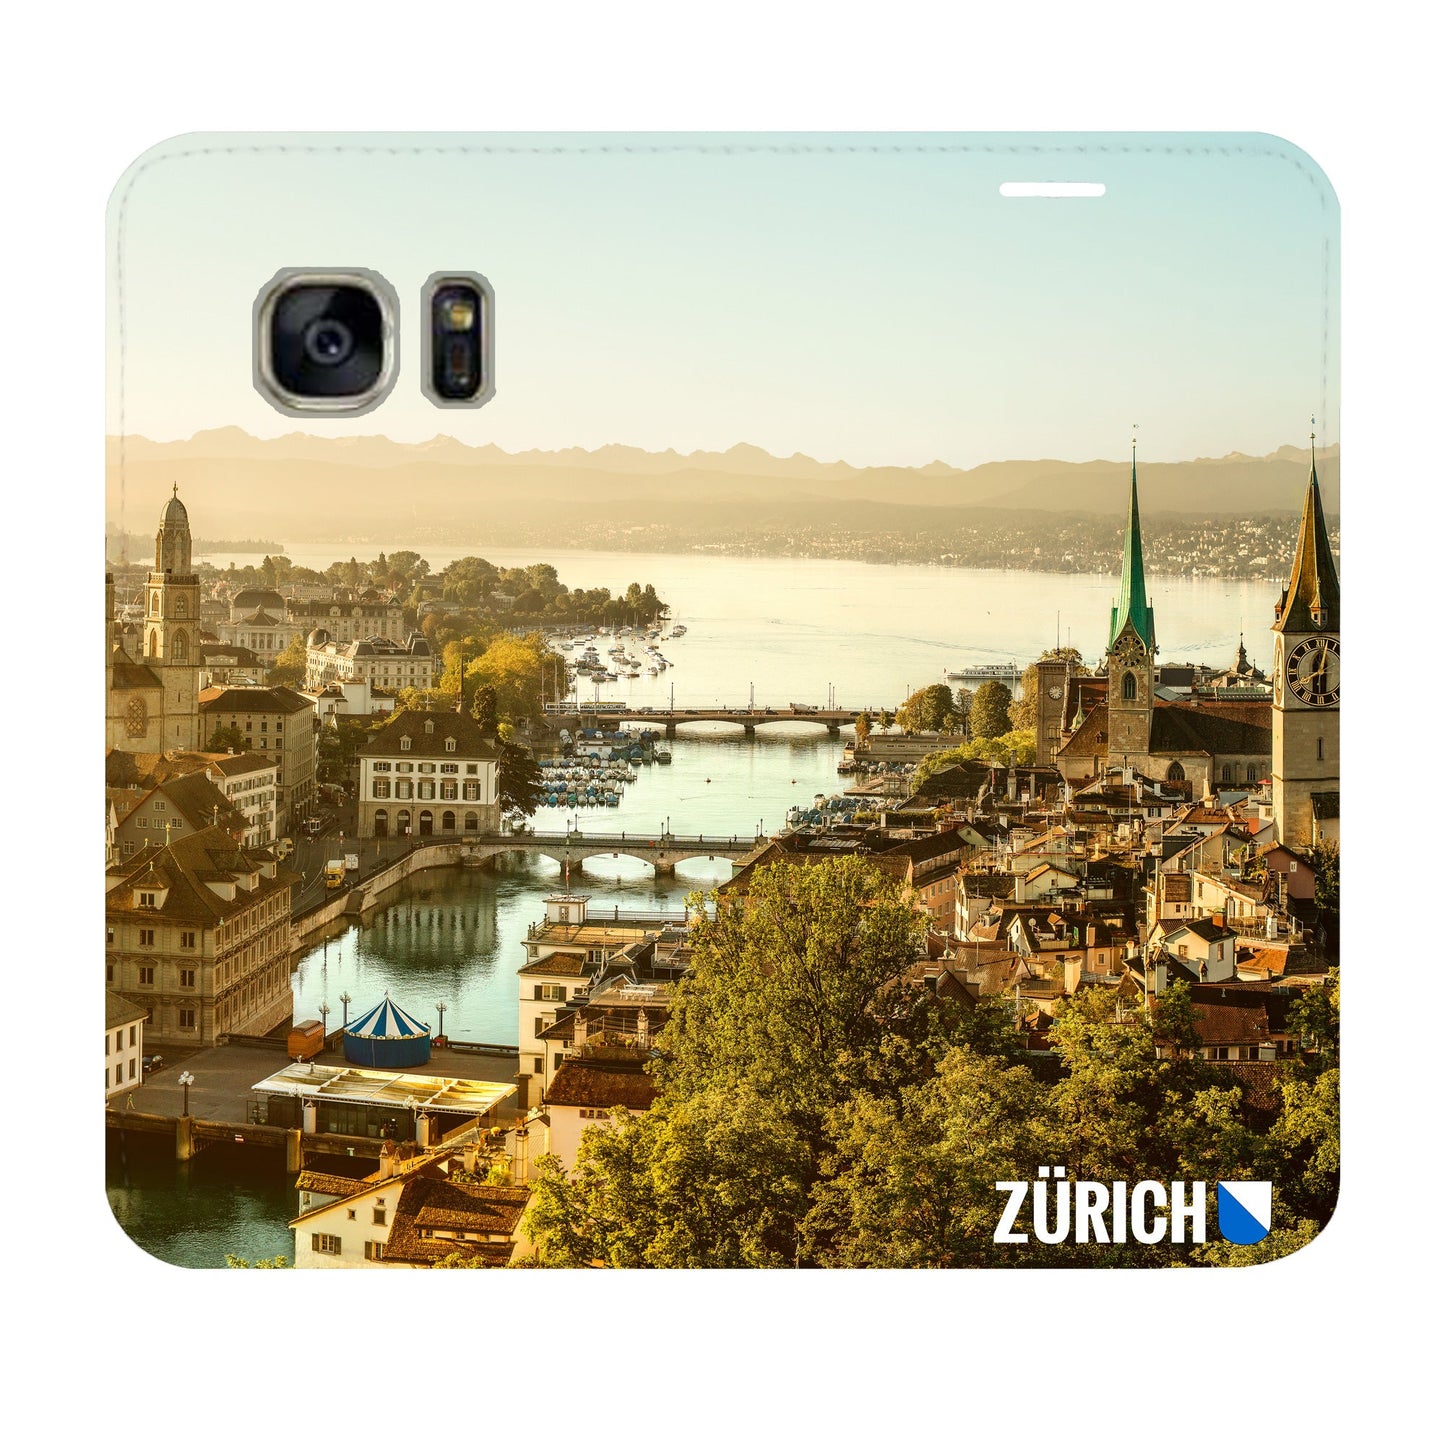 Zürich City von Oben Panorama für Samsung Galaxy S7 Edge